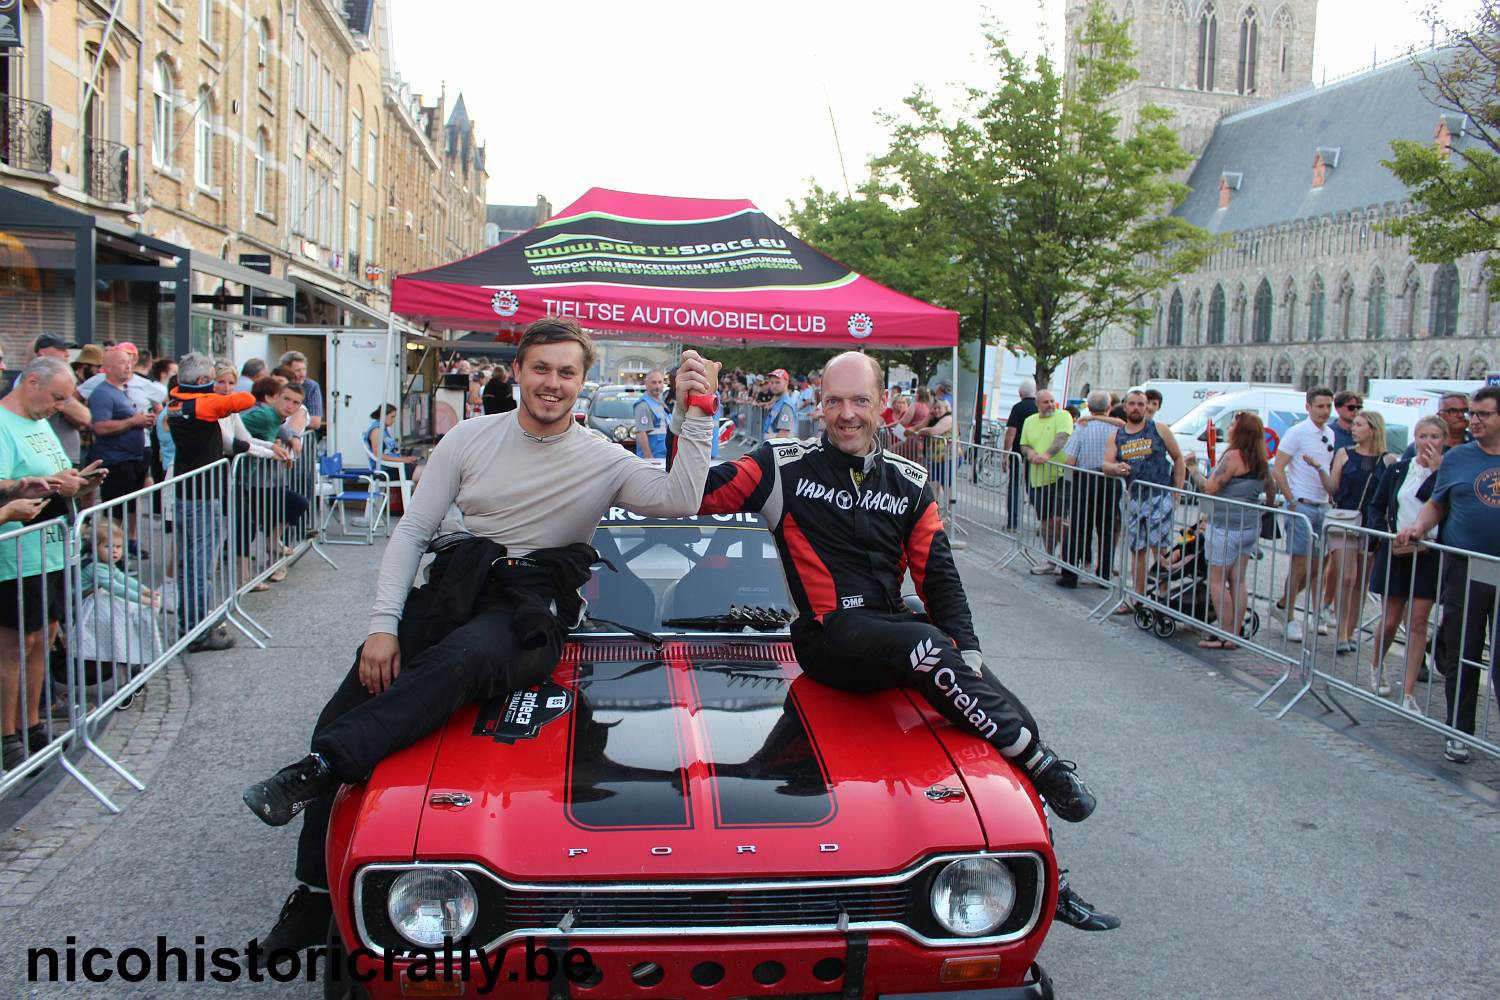 Foto-album van de shakedown en de Ardeca Ypres Rally zijn toegevoegd.